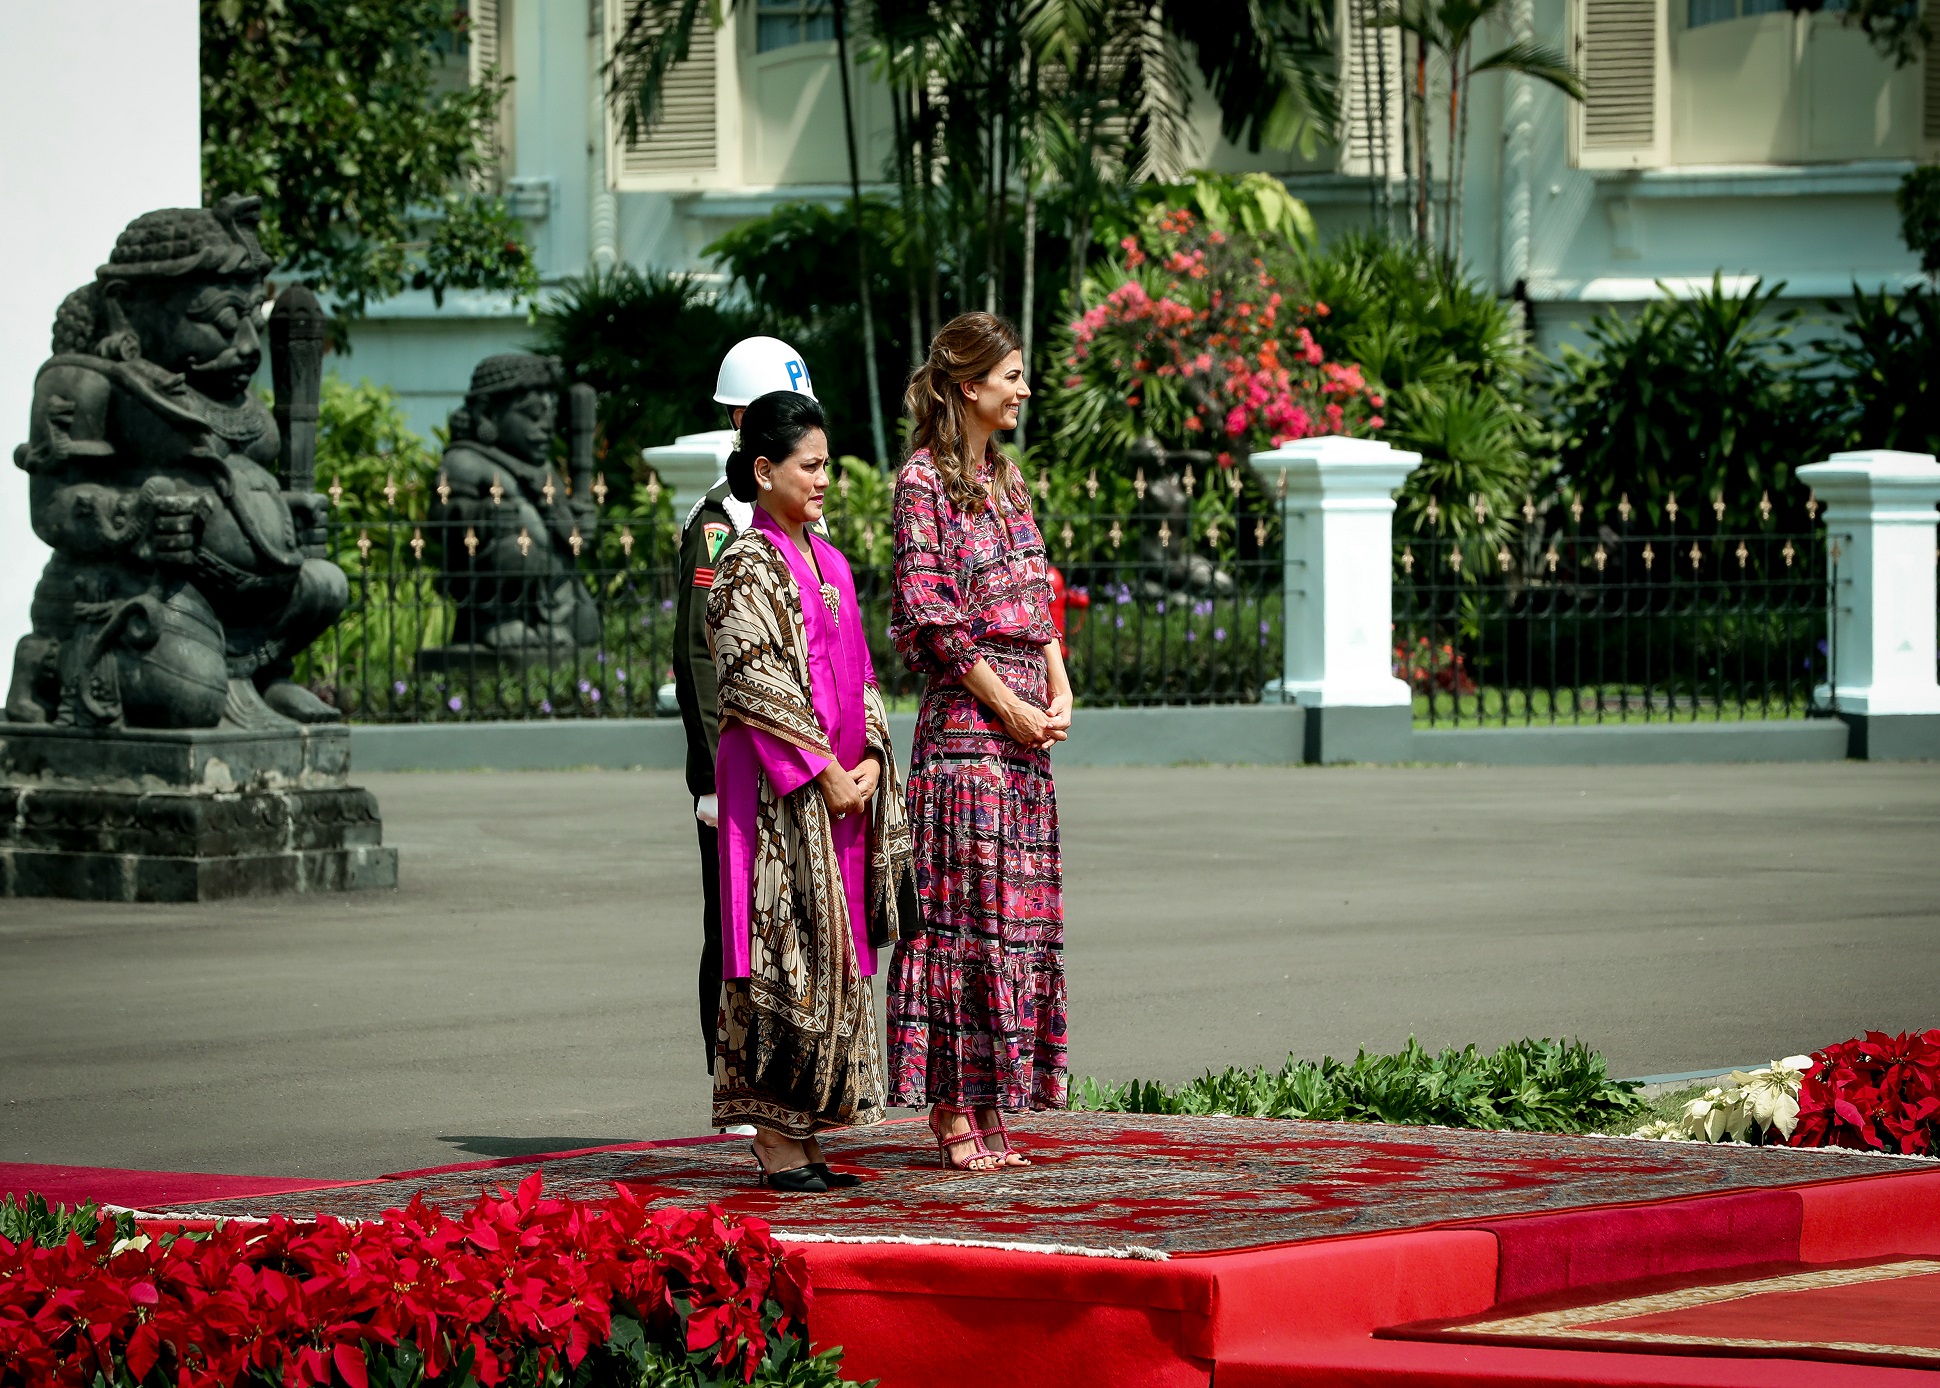 El Presidente y la Primera Dama realizaron una visita de Estado a Indonesia